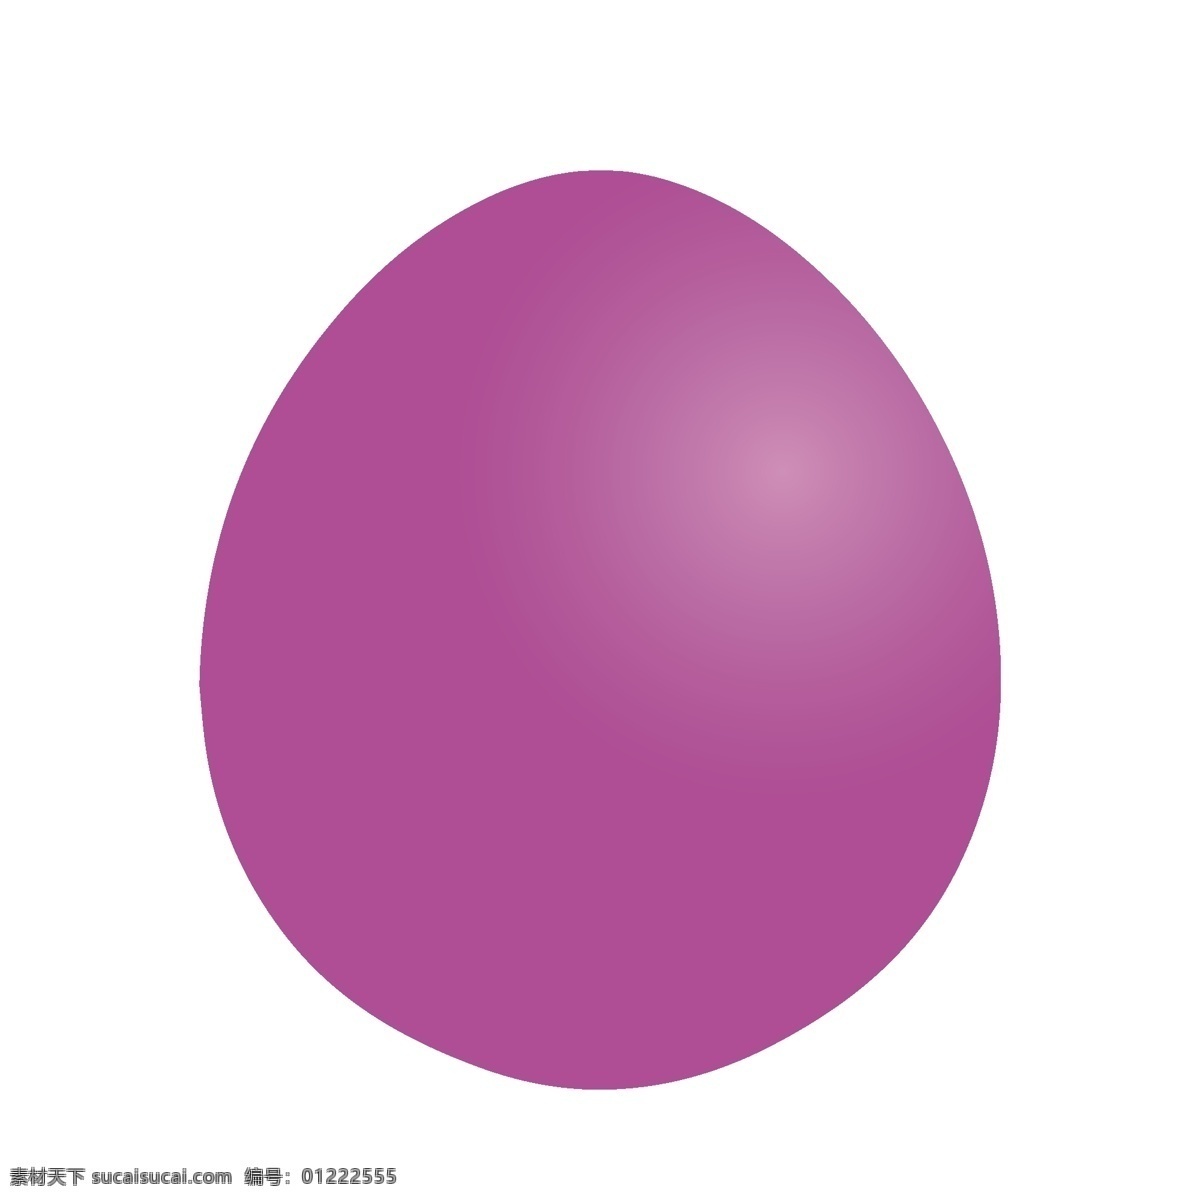 矢量 手绘 红色 彩蛋 渐变 质感 节日 鸡蛋 复活节 玩具 时尚 创意 卡通 png免抠图